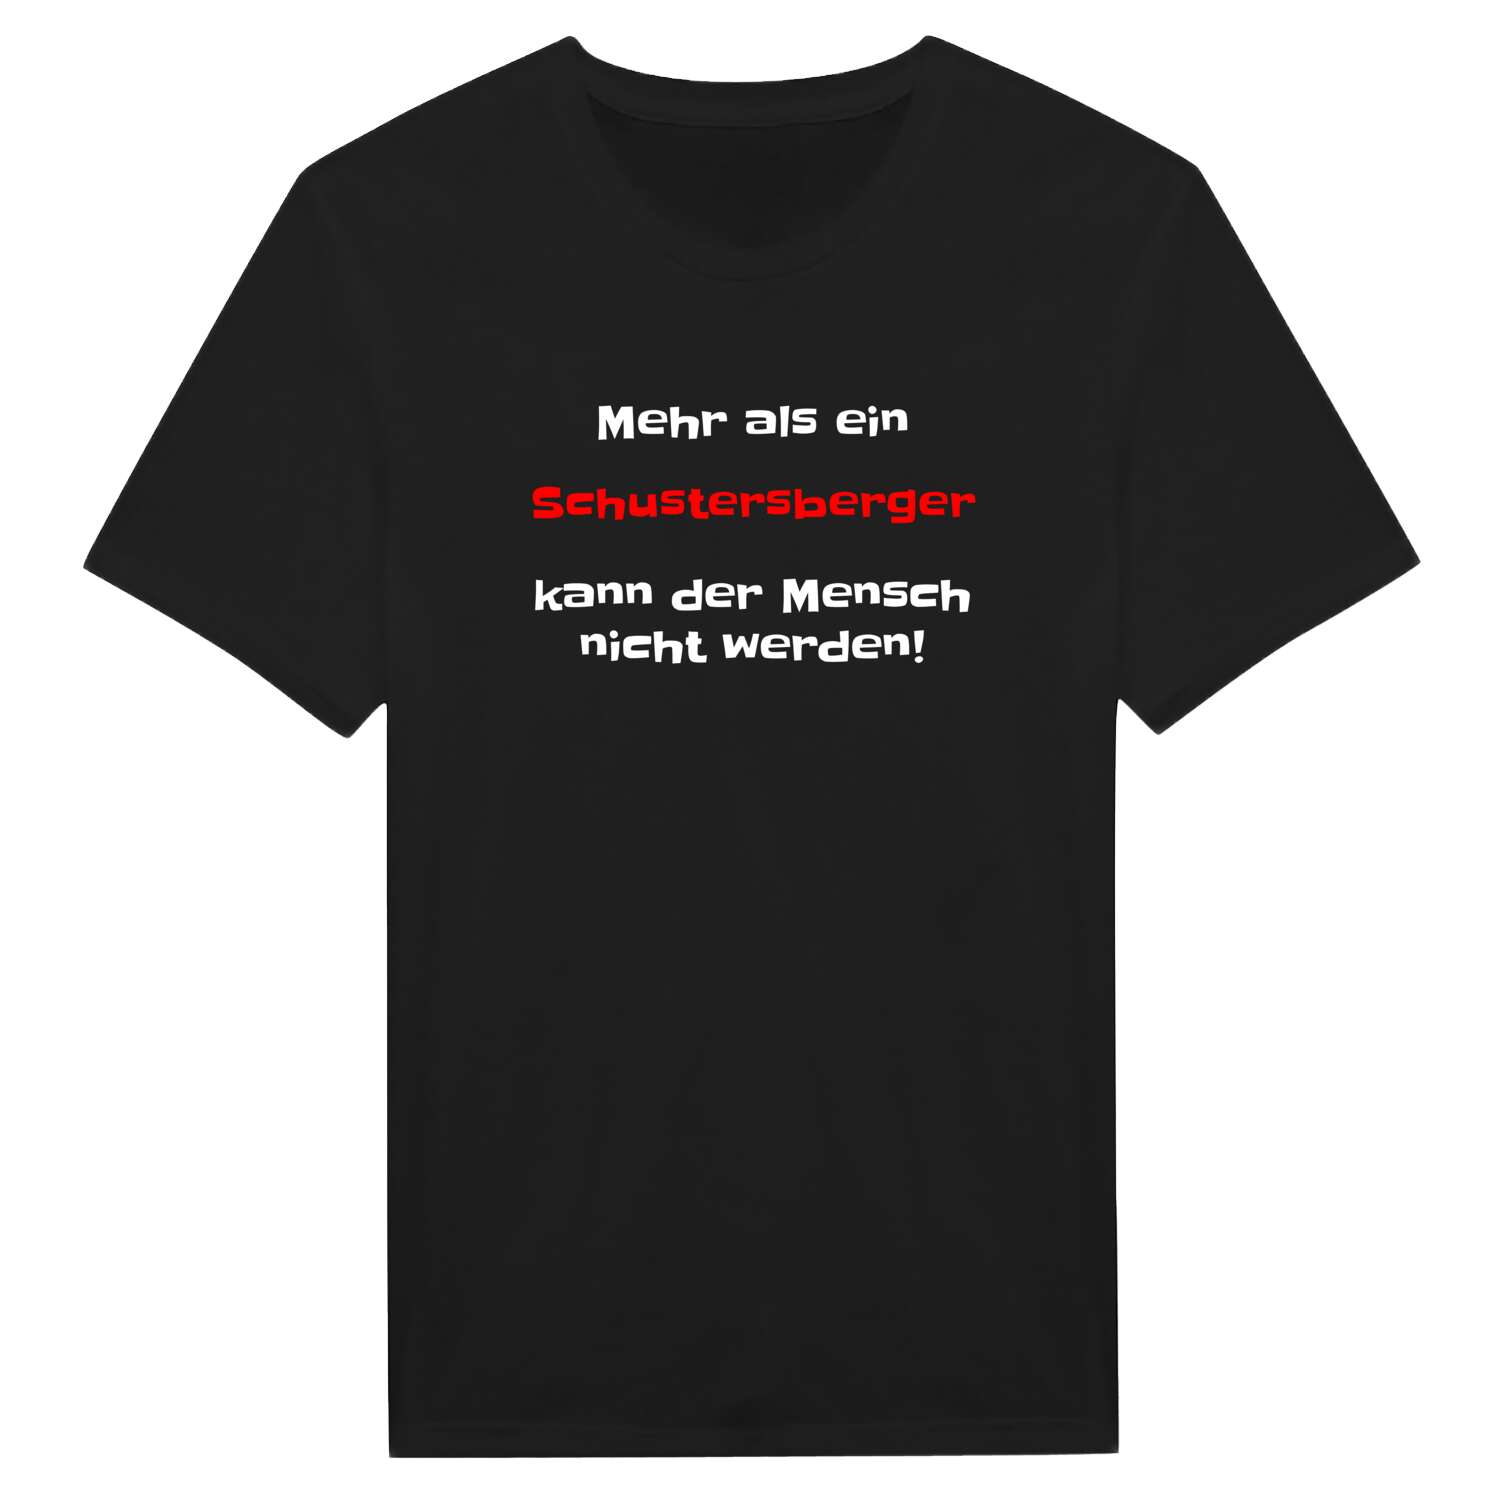 Schustersberg T-Shirt »Mehr als ein«